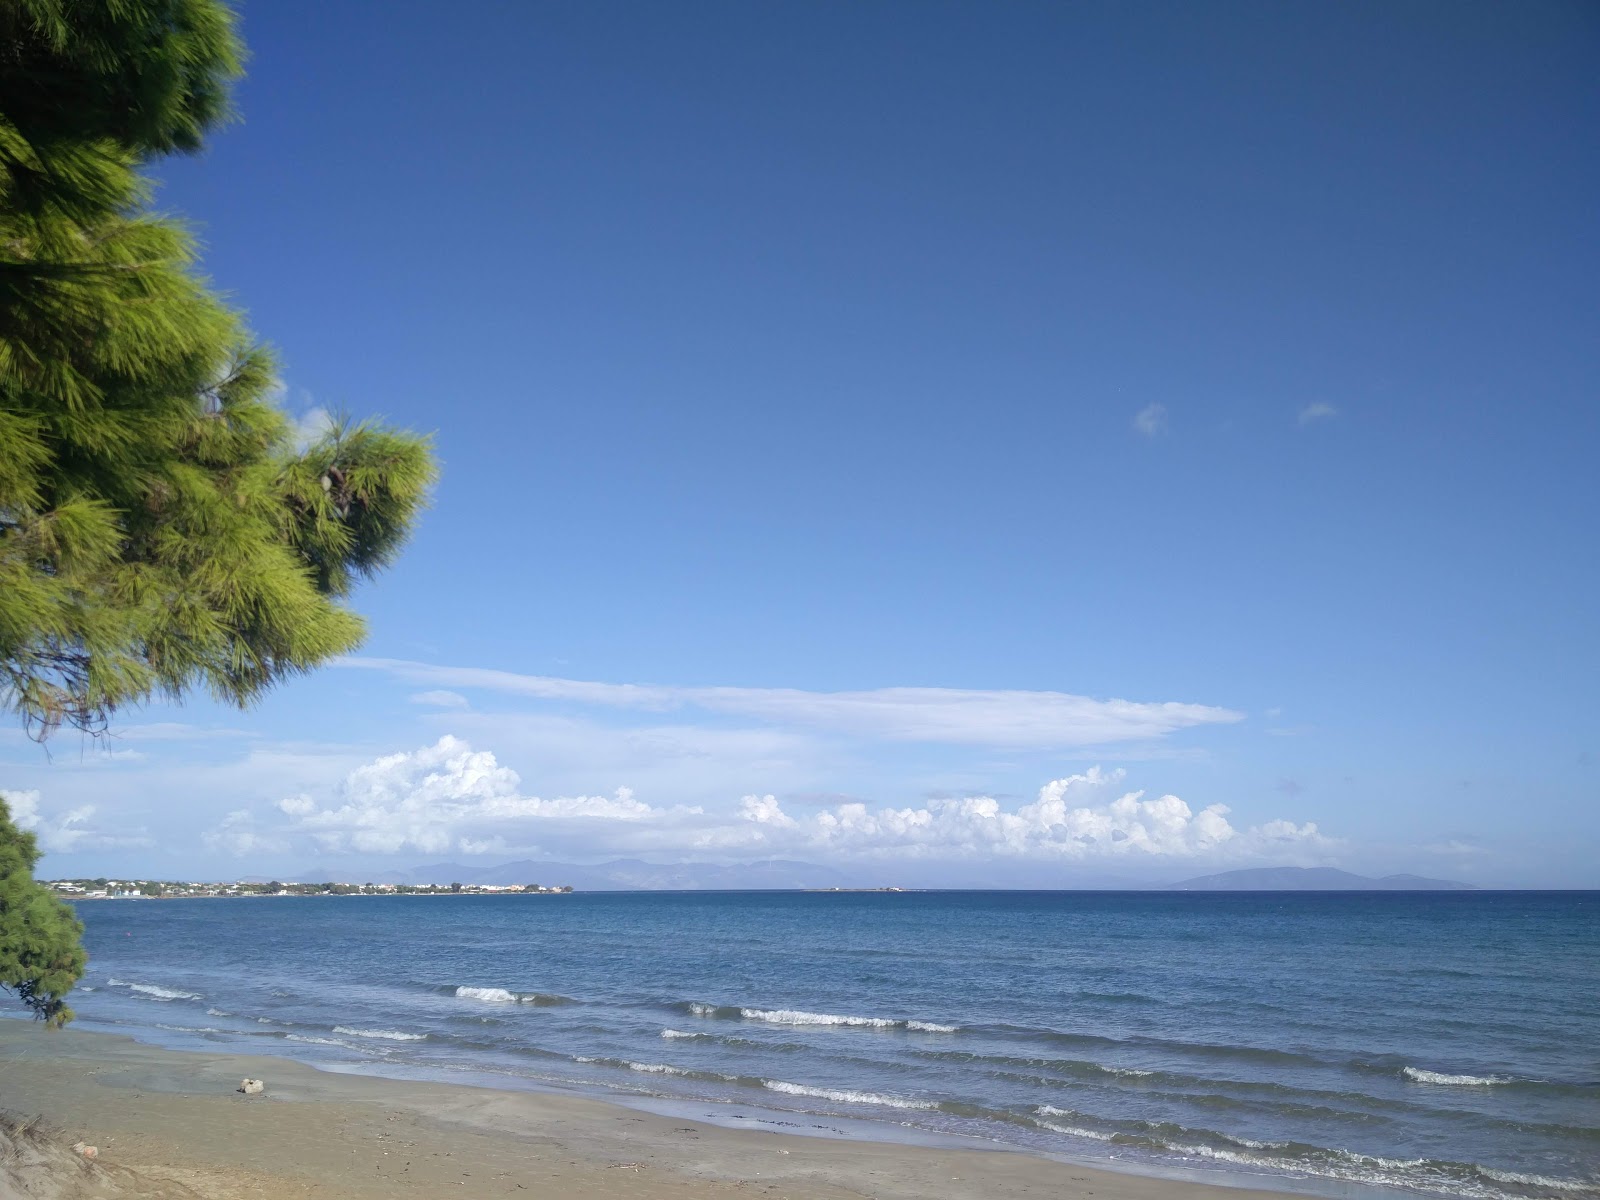 Zdjęcie Artemis beach - popularne miejsce wśród znawców relaksu